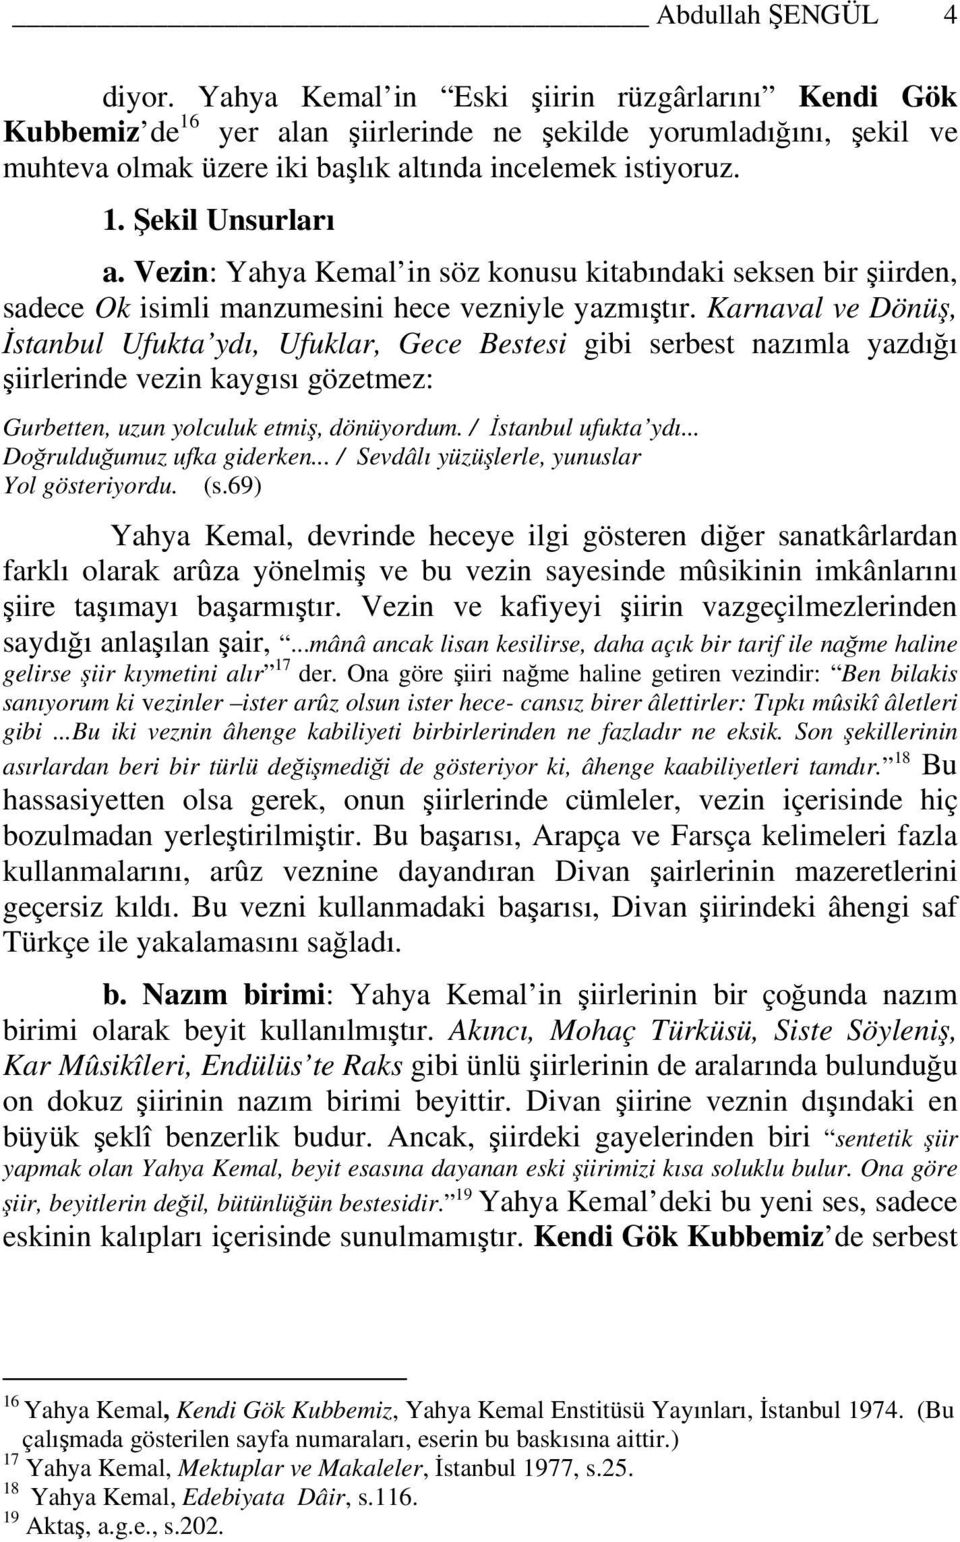 Vezin: Yahya Kemal in söz konusu kitabındaki seksen bir şiirden, sadece Ok isimli manzumesini hece vezniyle yazmıştır.